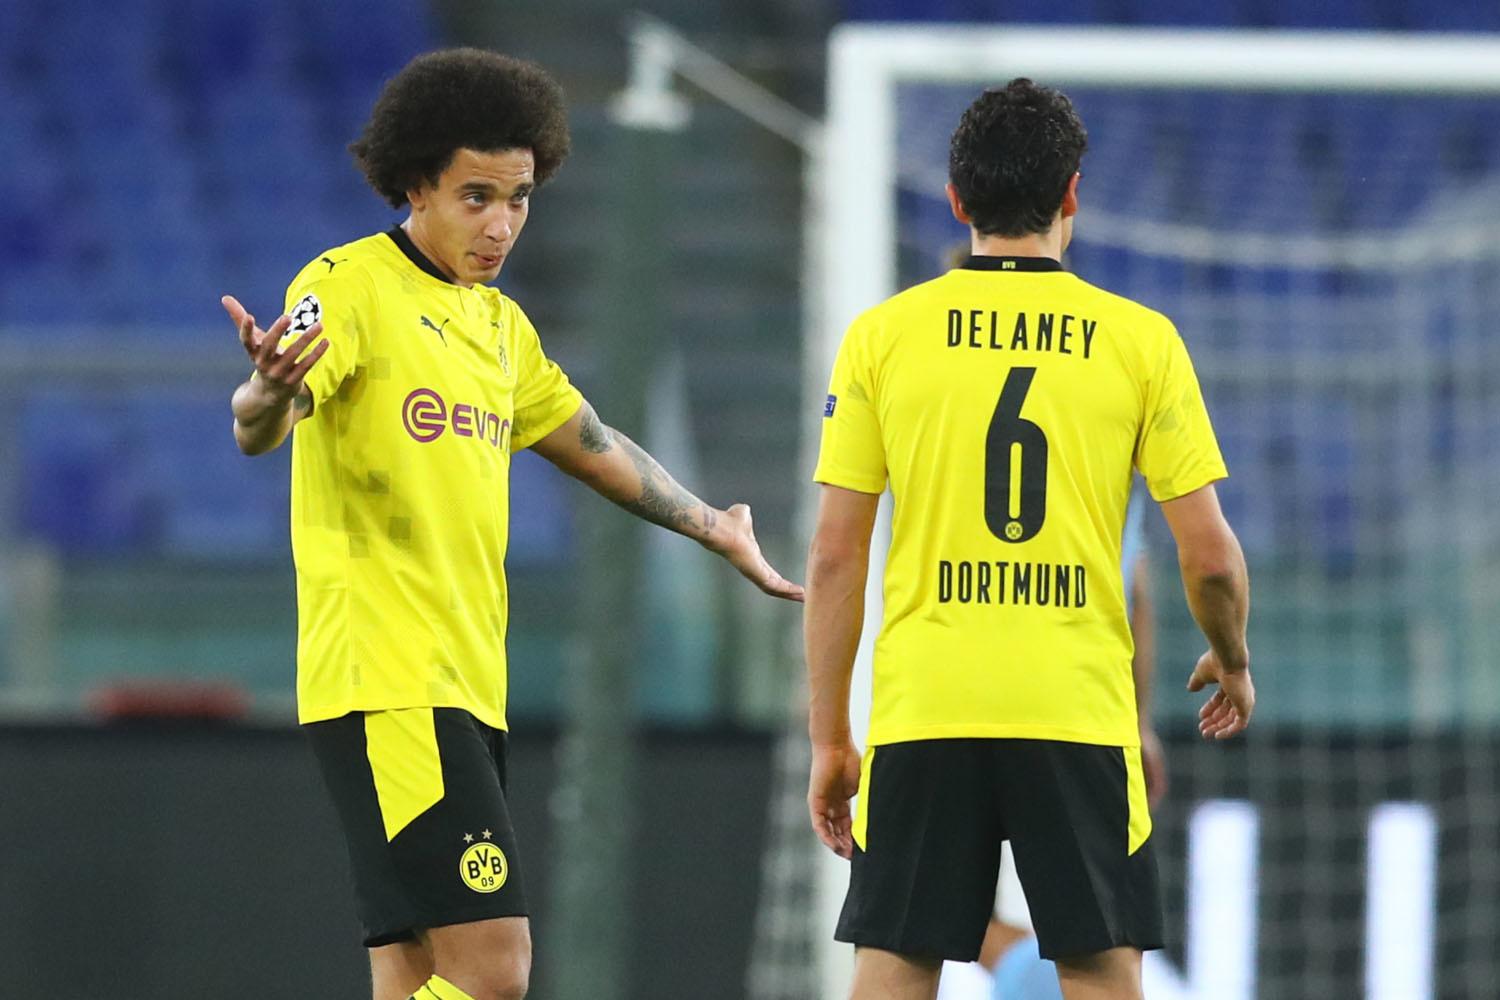 Dortmund had het knap lastig met Lazio en begon slecht aan de Champions League